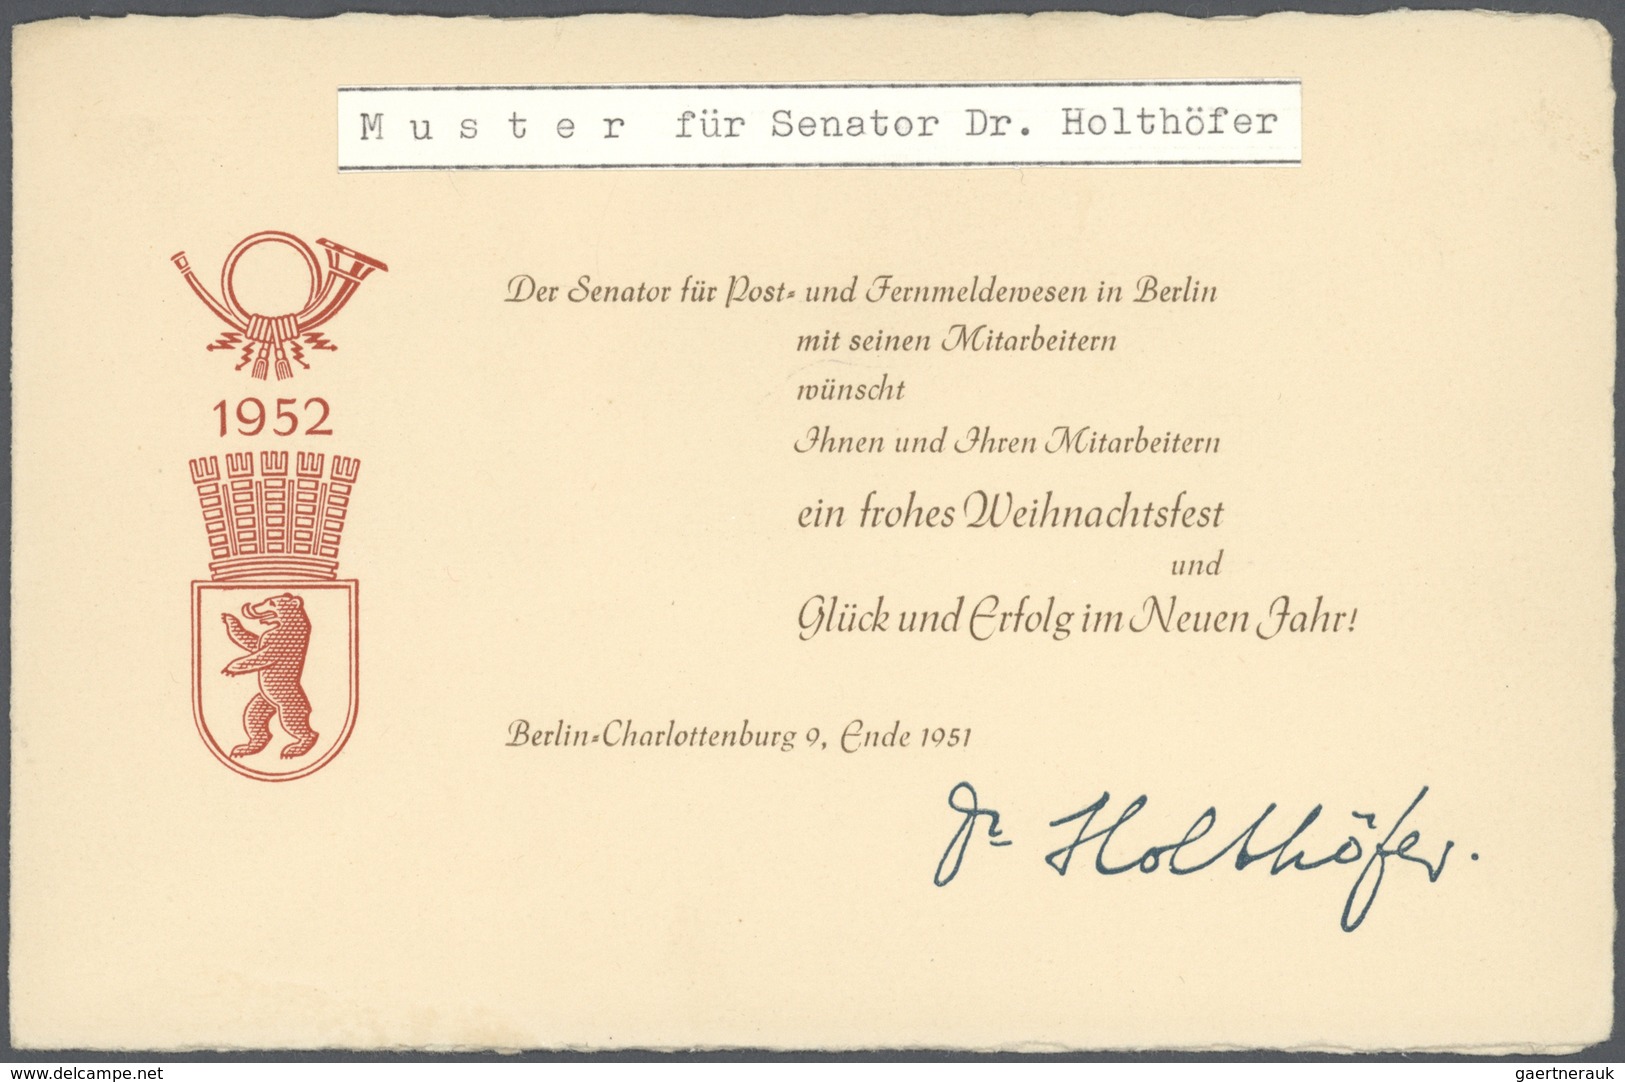 32433 Bundesrepublik und Berlin: 1951/1959, außergewöhnliche Sammlung von vier Minister-Geschenkheften und